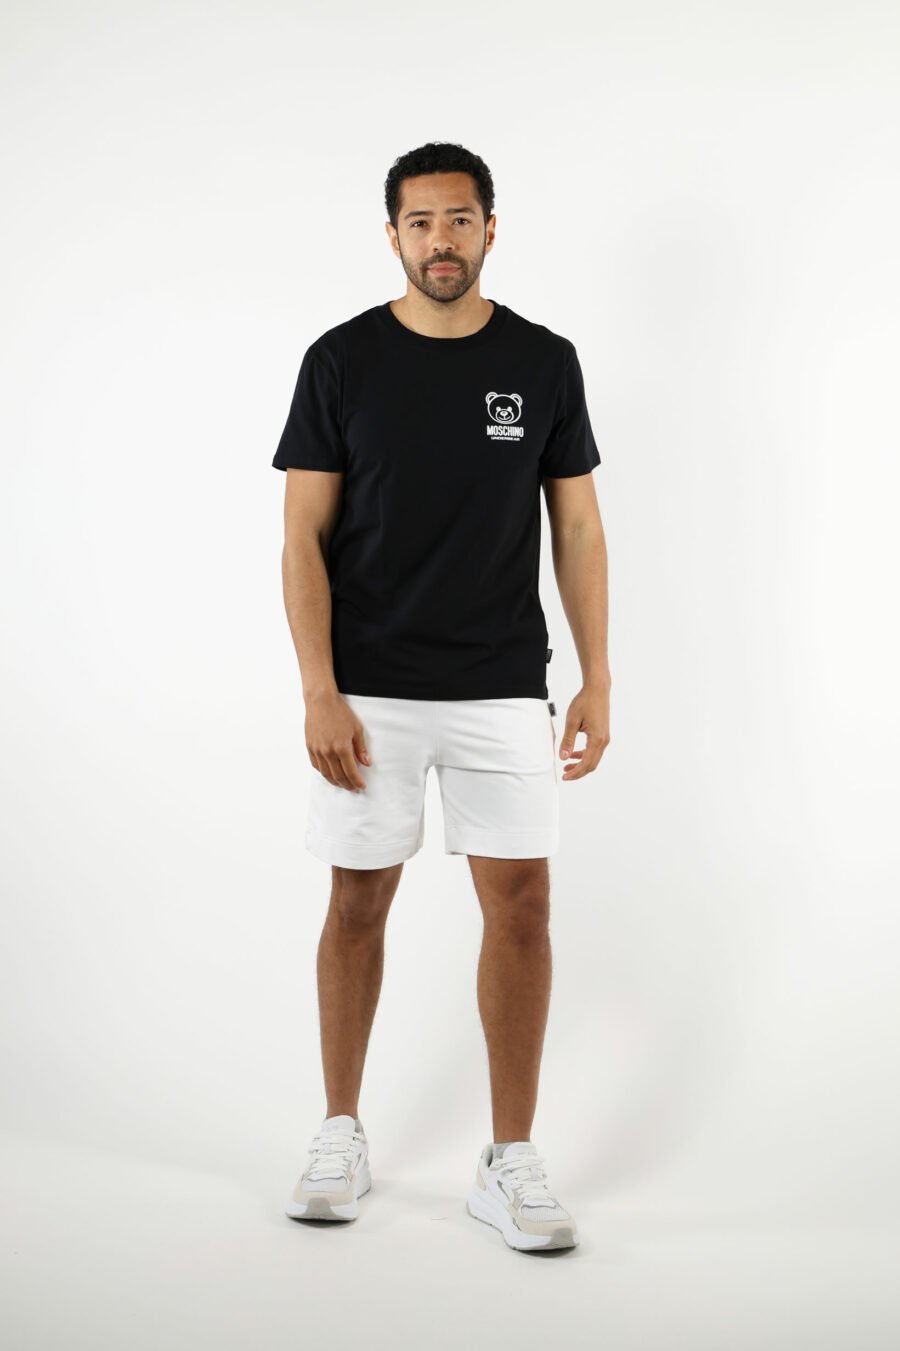 Camiseta negra con minilogo oso "underbear" en goma blanco - 111013